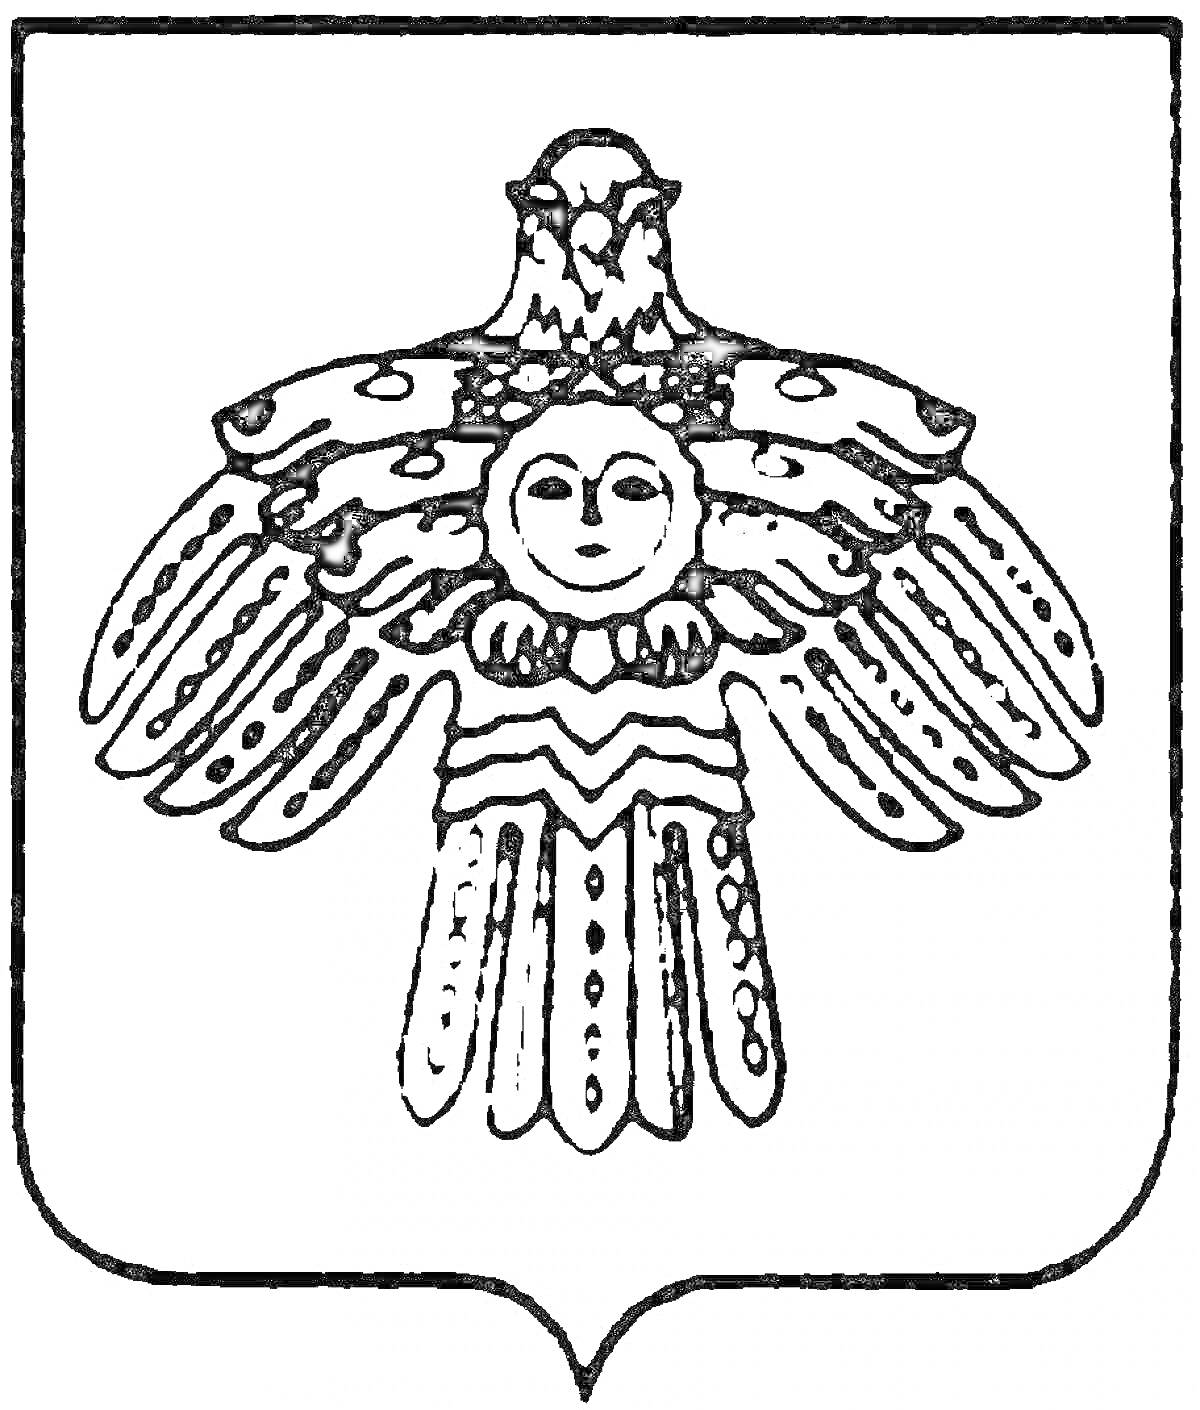 Раскраска Герб с изображением птицы с расправленными крыльями и человеческим лицом на груди